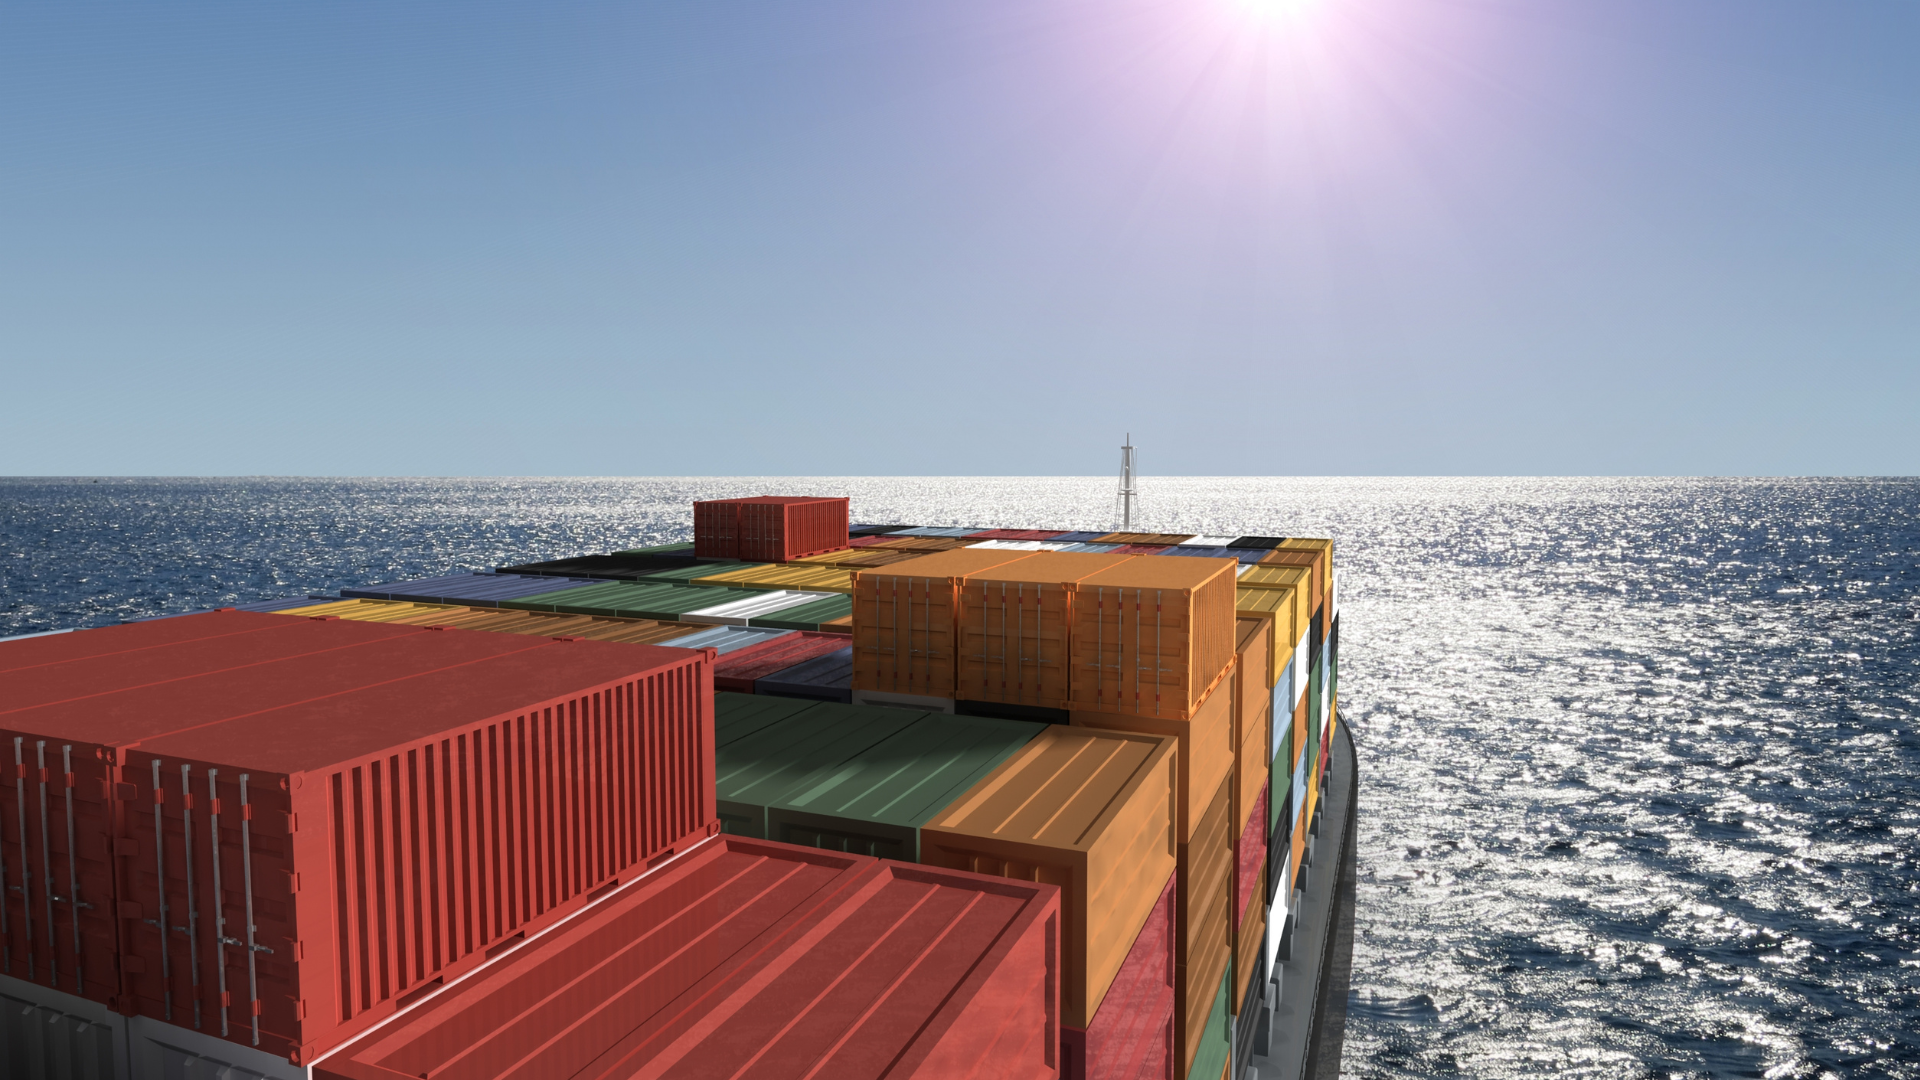 Container demurrages. I principi fissati da una recente sentenza del Tribunale di Genova